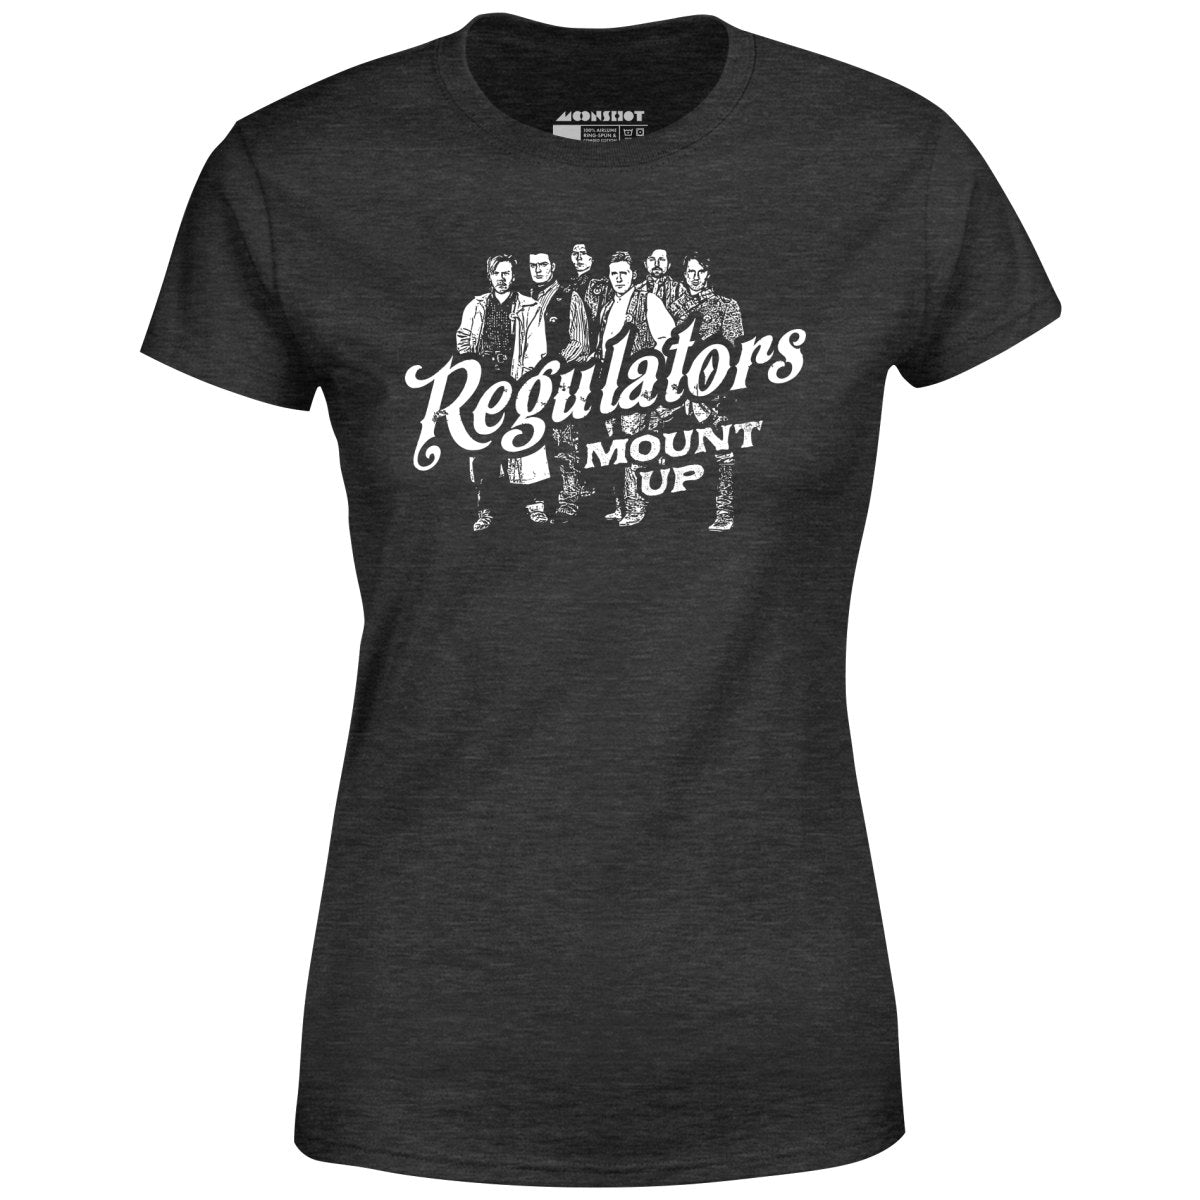 Regulators Mount Up - Women's T-Shirt